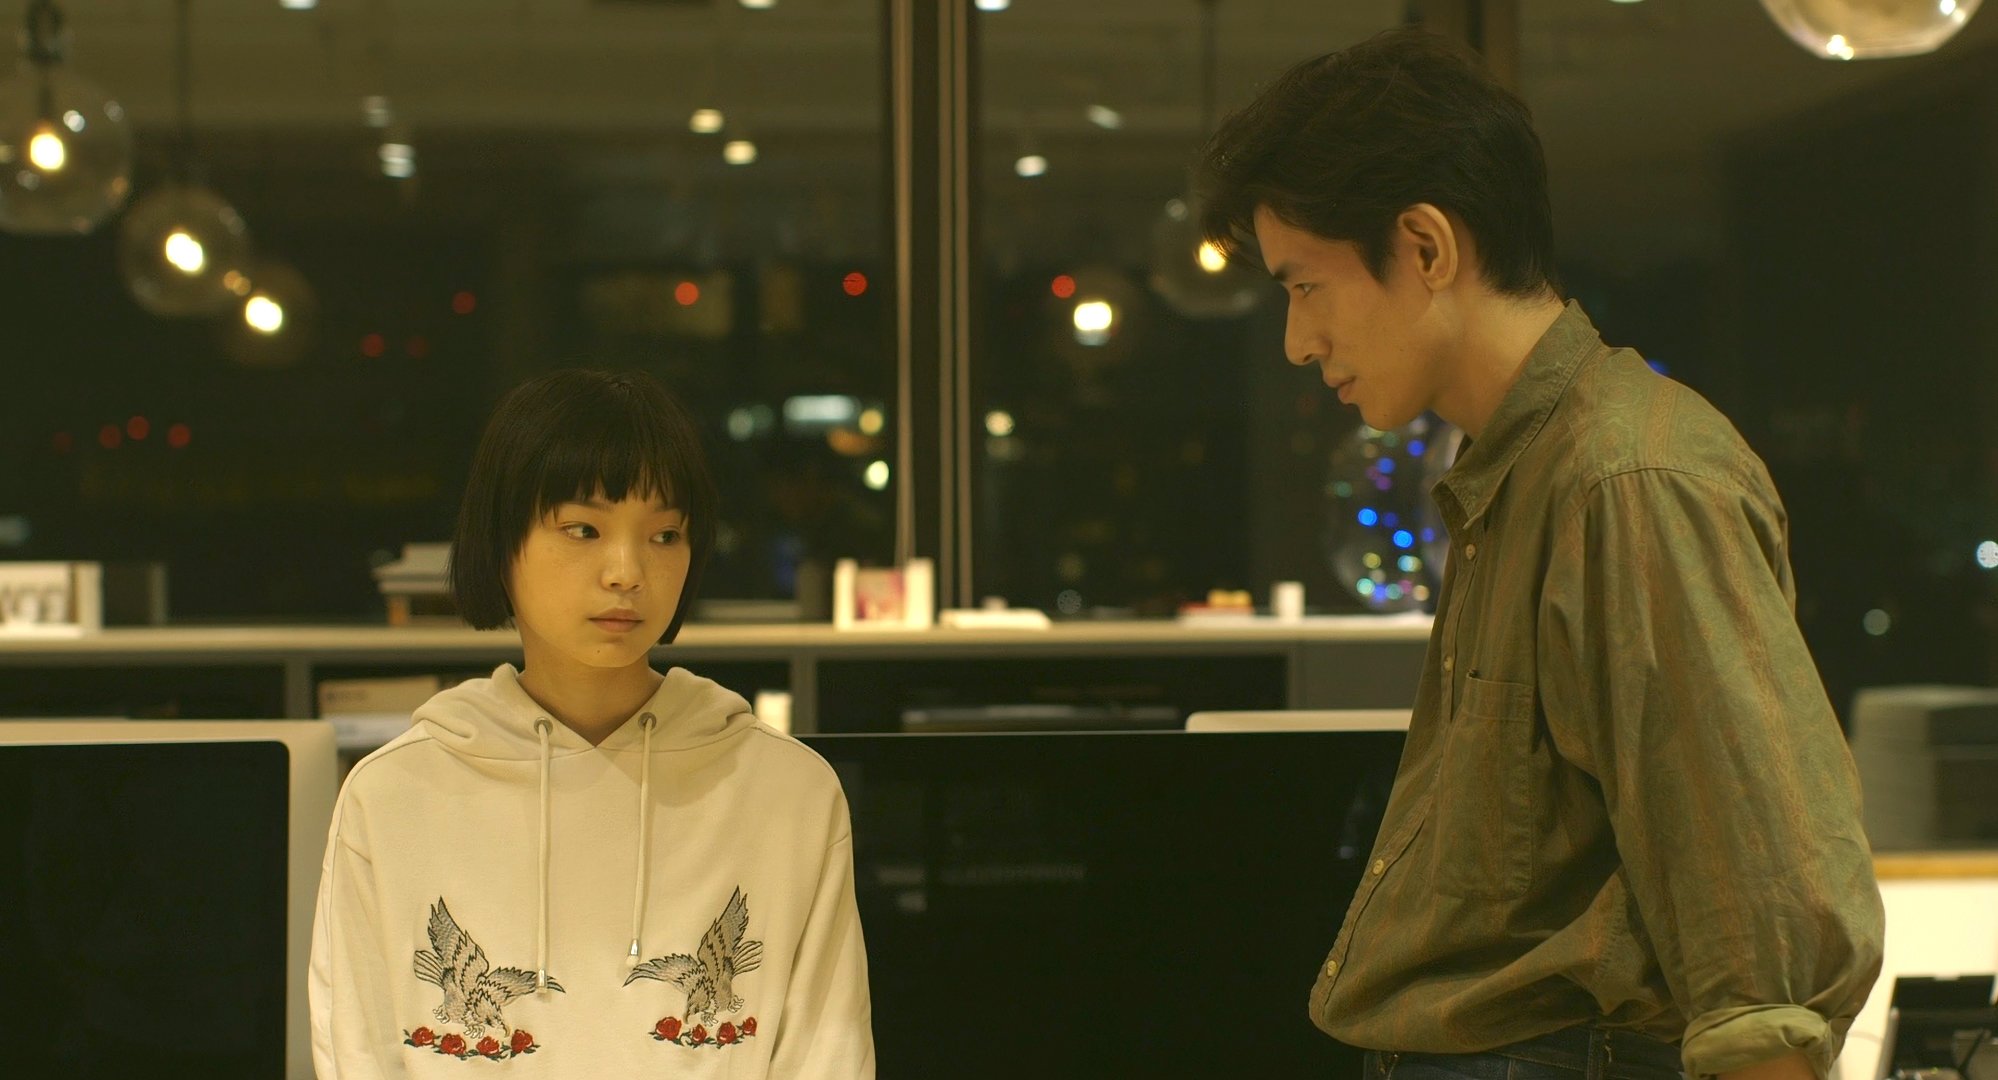 Meiko und Kazuaki nachts in einem Großraumbüro. Sie sitzt mit traurigem Ausdruck und trägt einen weißen Hoodie mit Vogelaufdruck. Er steht rechts neben ihr und trägt ein khakifarbenes Hemd. Im Hintergrund sieht man, dass es außen bereits dunkel ist.